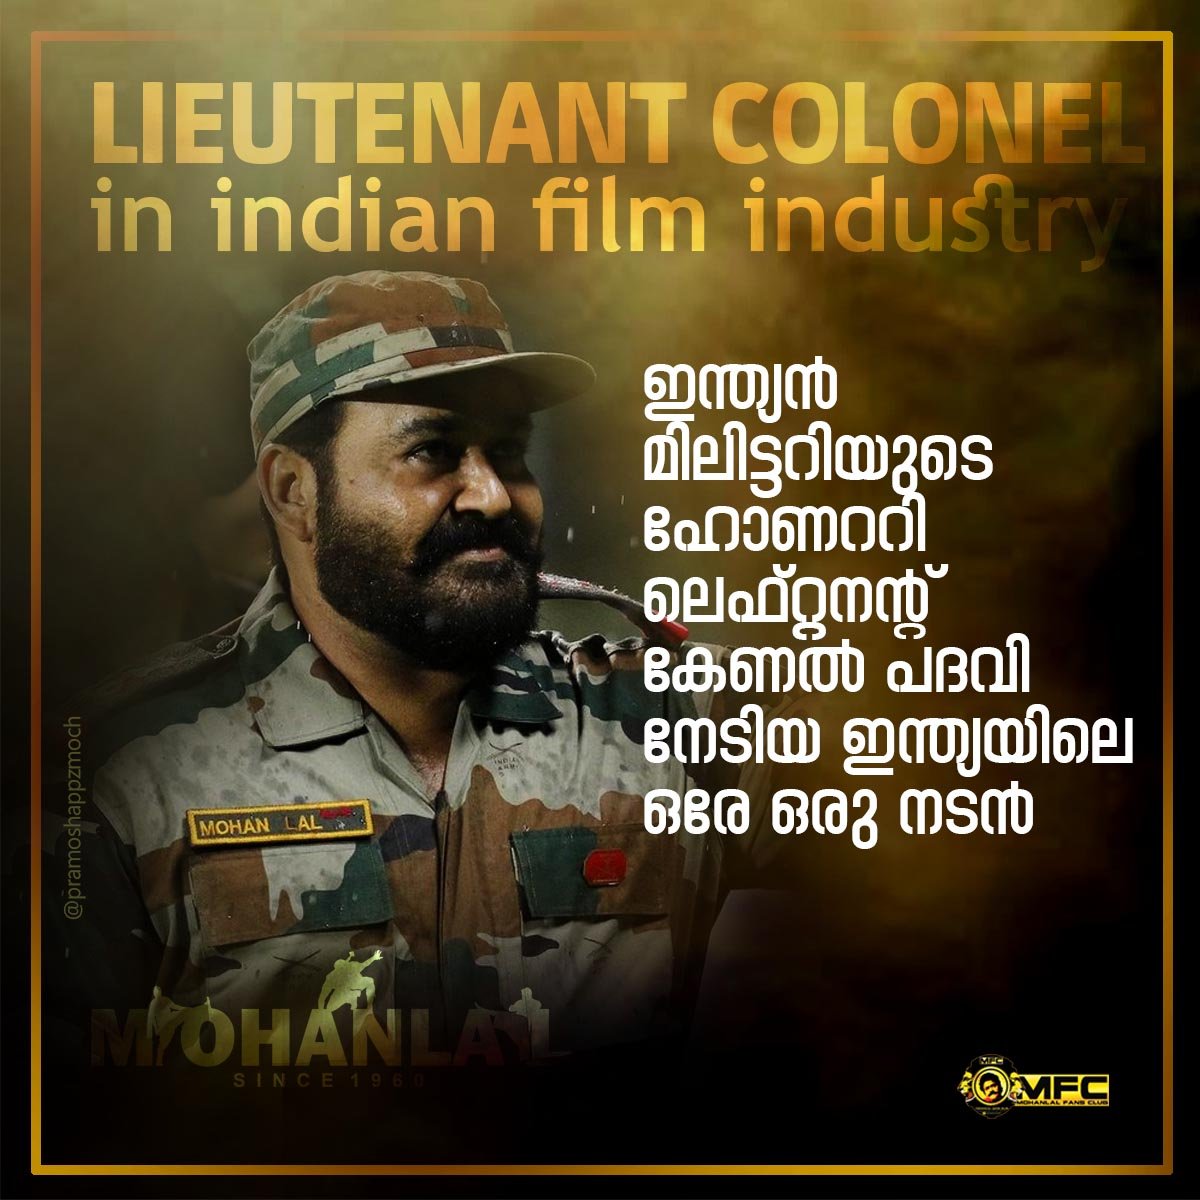 ഇന്ത്യൻ മിലിട്ടറിയുടെ ഹോണററി ലെഫ്റ്റനന്റ് കേണൽ പദവി നേടിയ ഇന്ത്യയിലെ ഒരേ ഒരു നടൻ..!!

#LieutenantColonel 

#LalettanBdayMonth